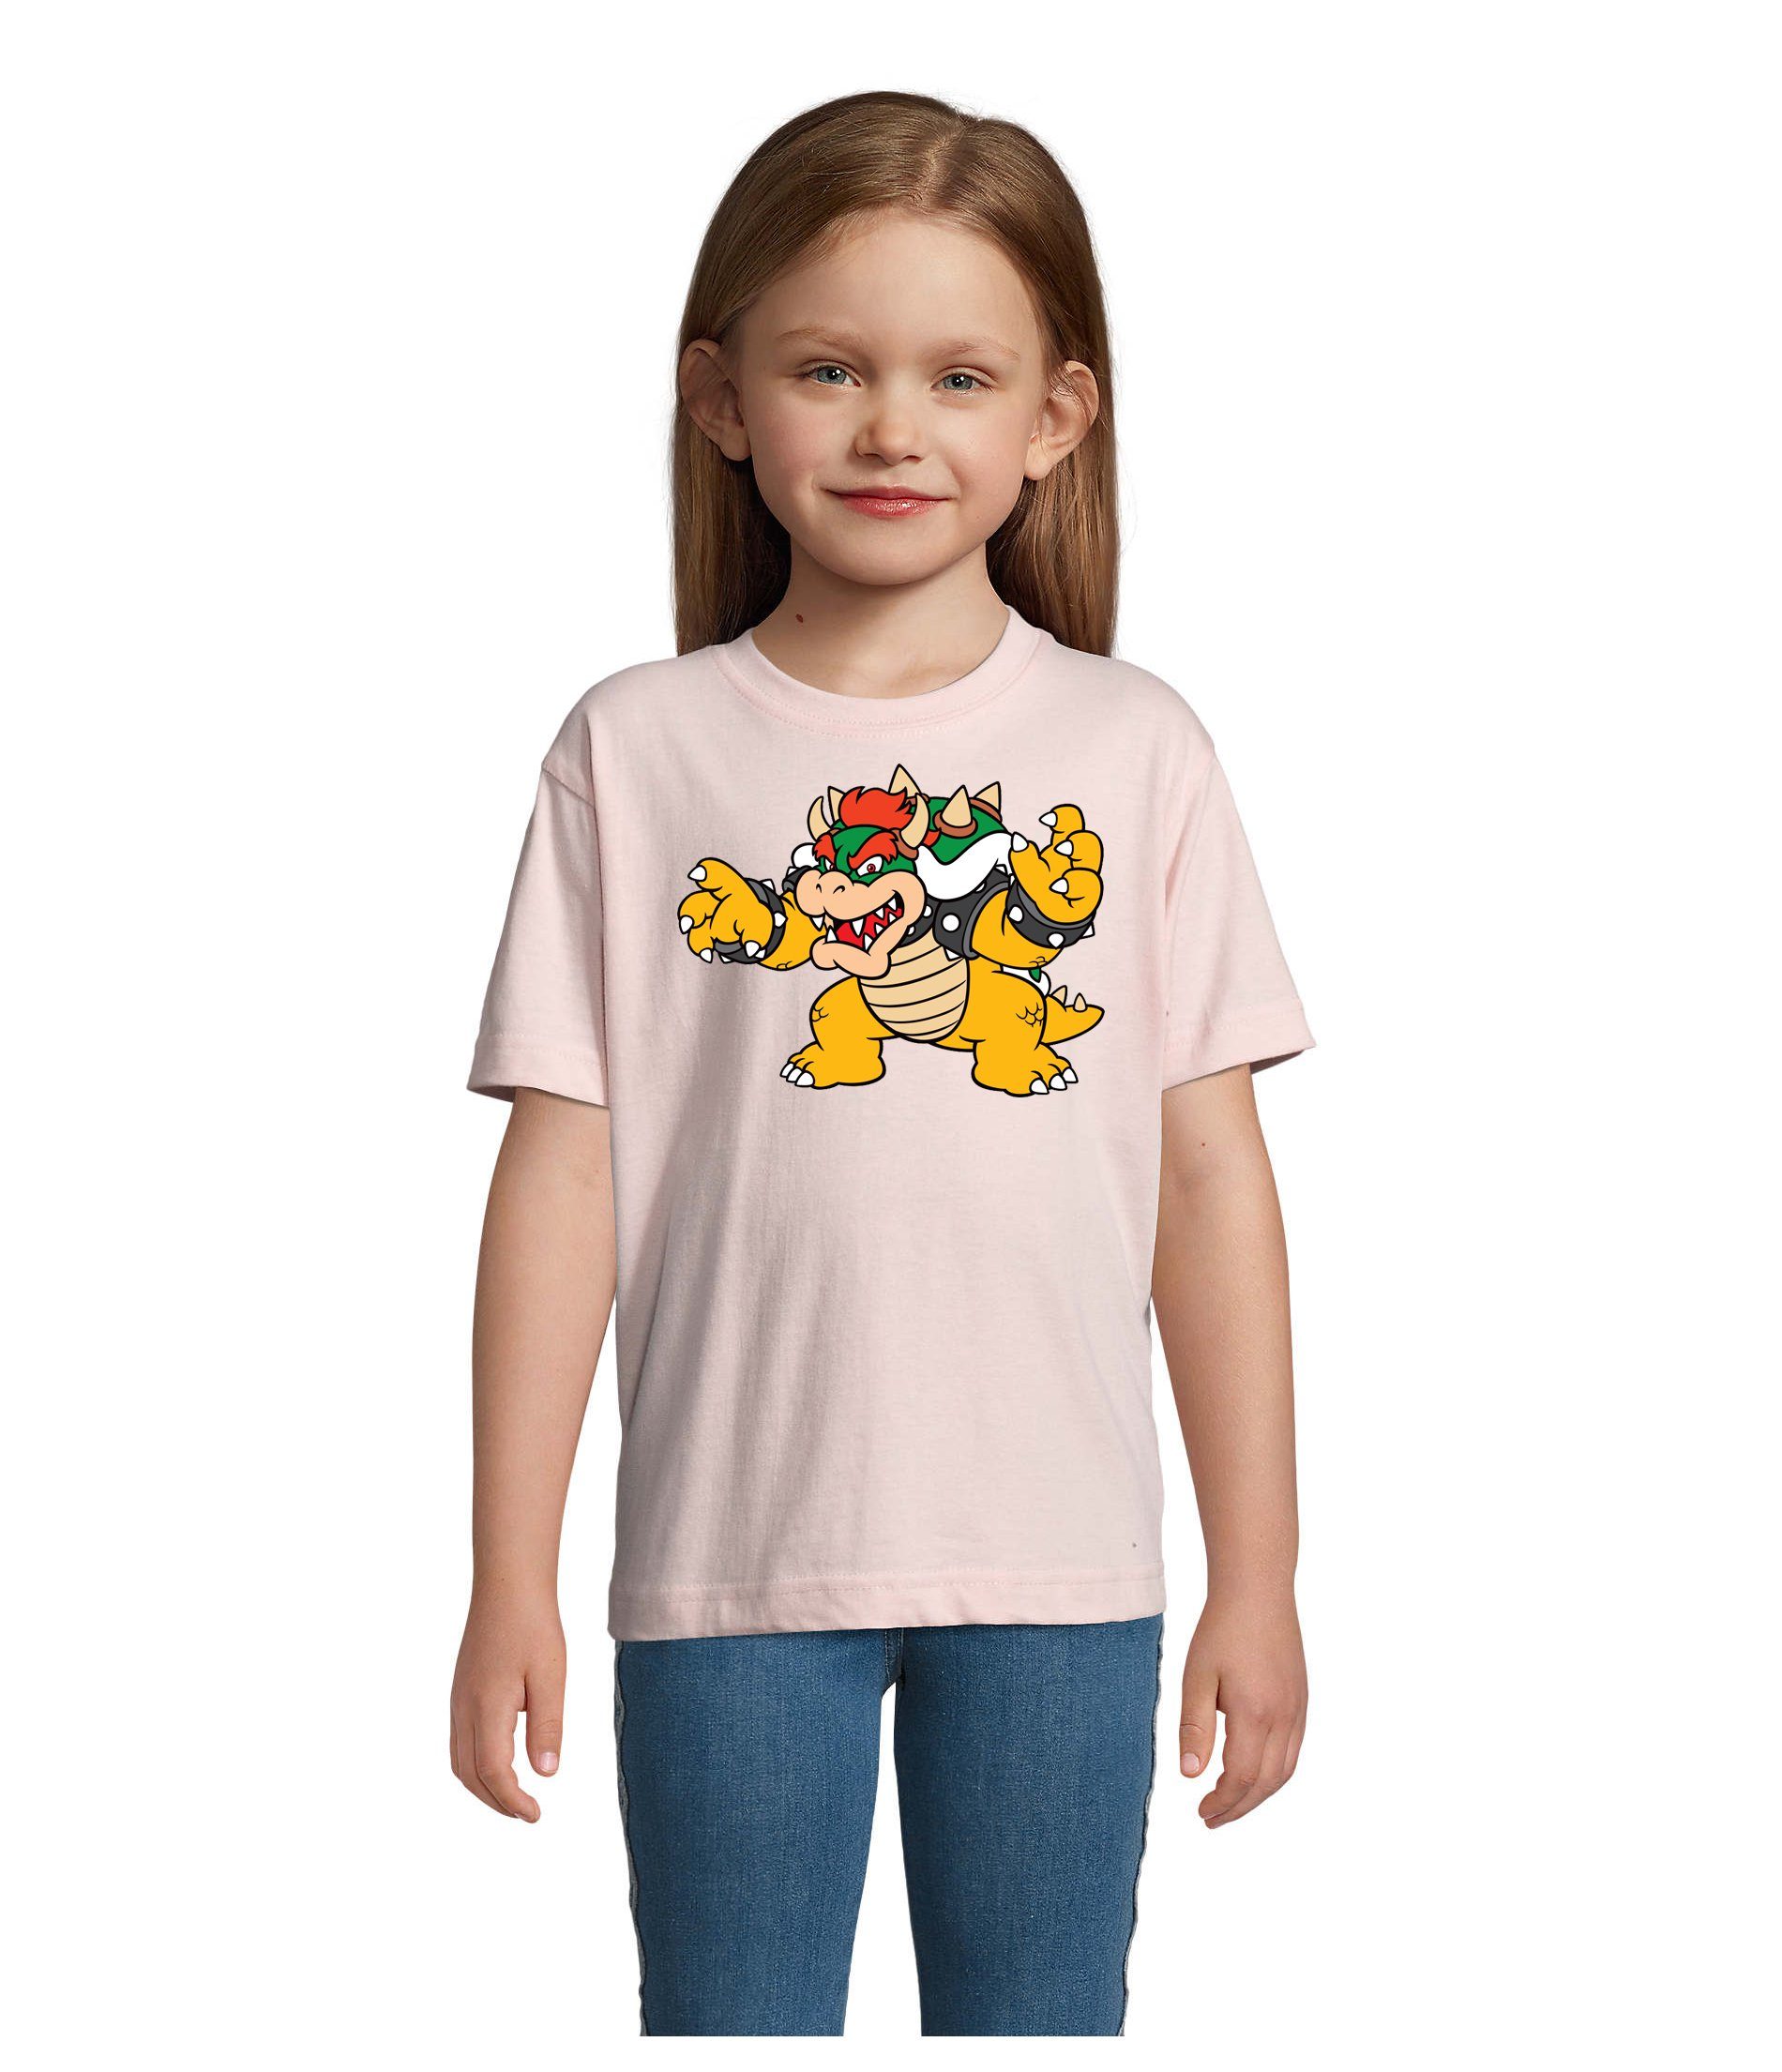 Blondie & Brownie T-Shirt Kinder Gamer Game Bowser Konsole Rosa Yoshi Mario Luigi Nintendo